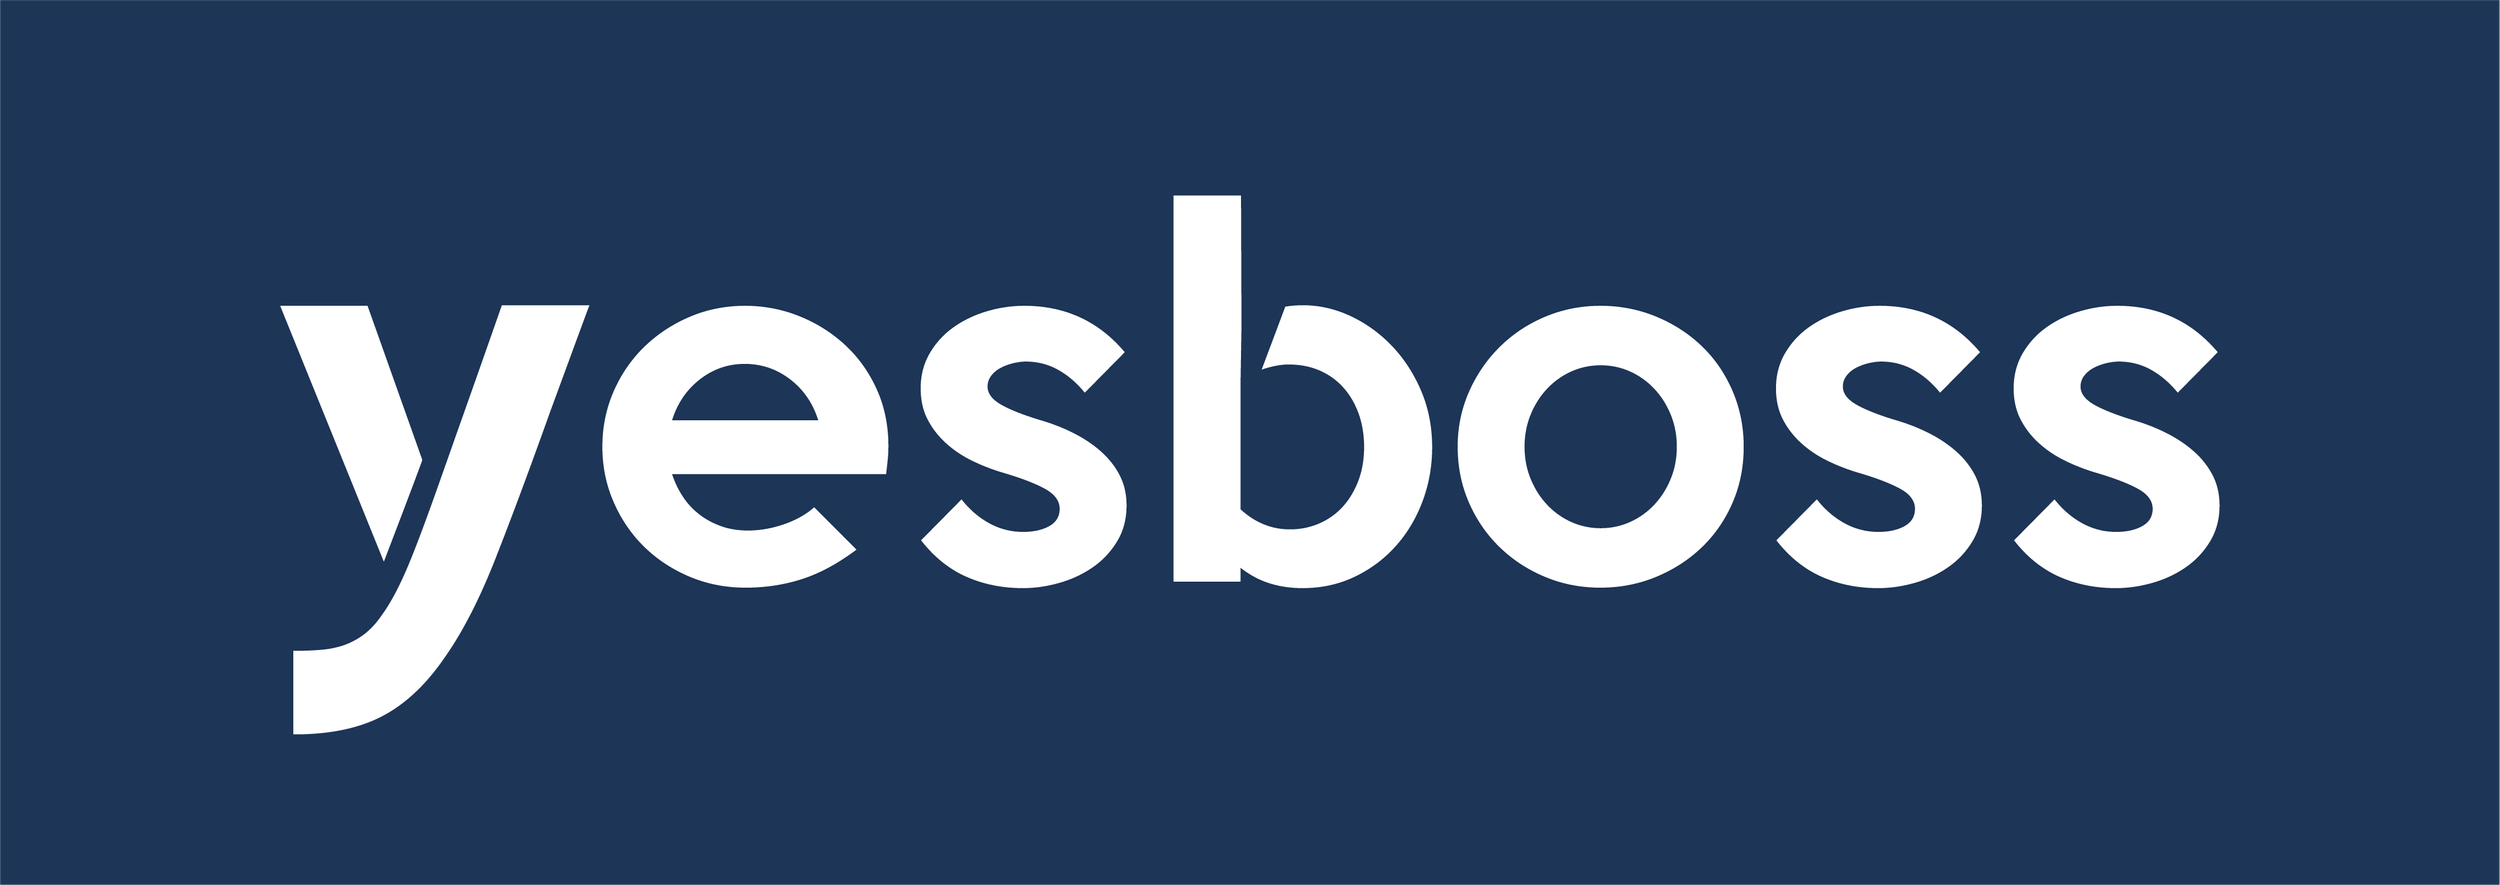 yesboss full logo #1-06 (1).png